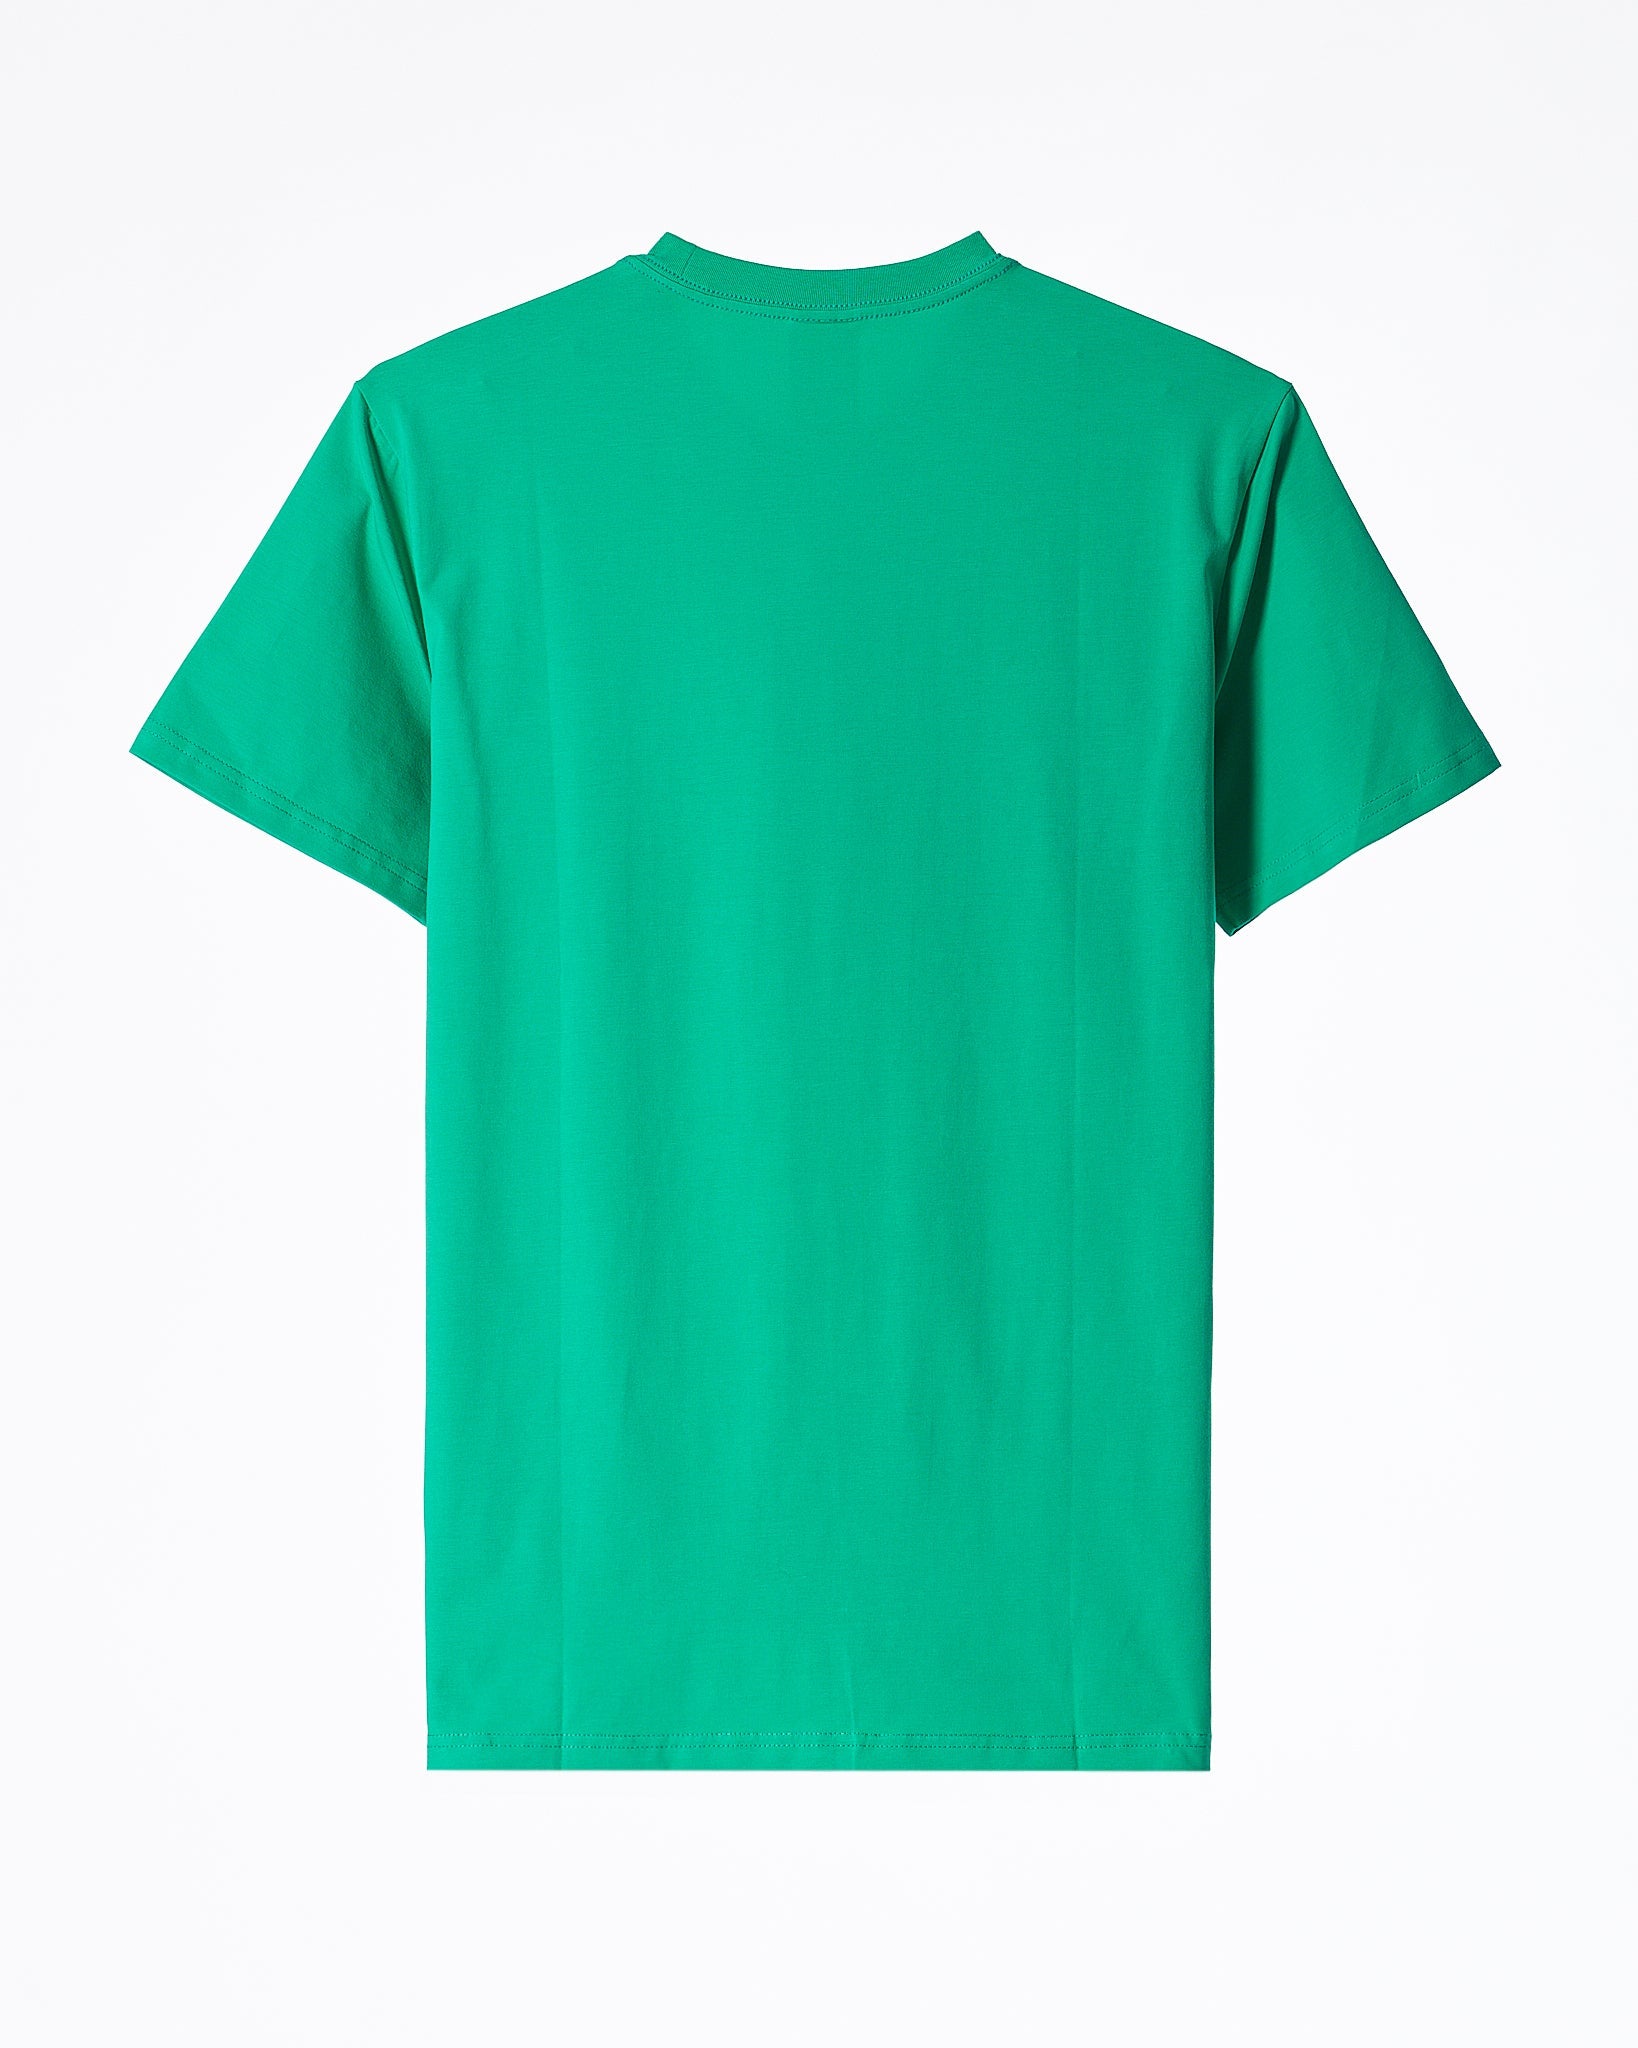 MOI OUTFIT-AD Emboss Men Green T-Shirt 16.90